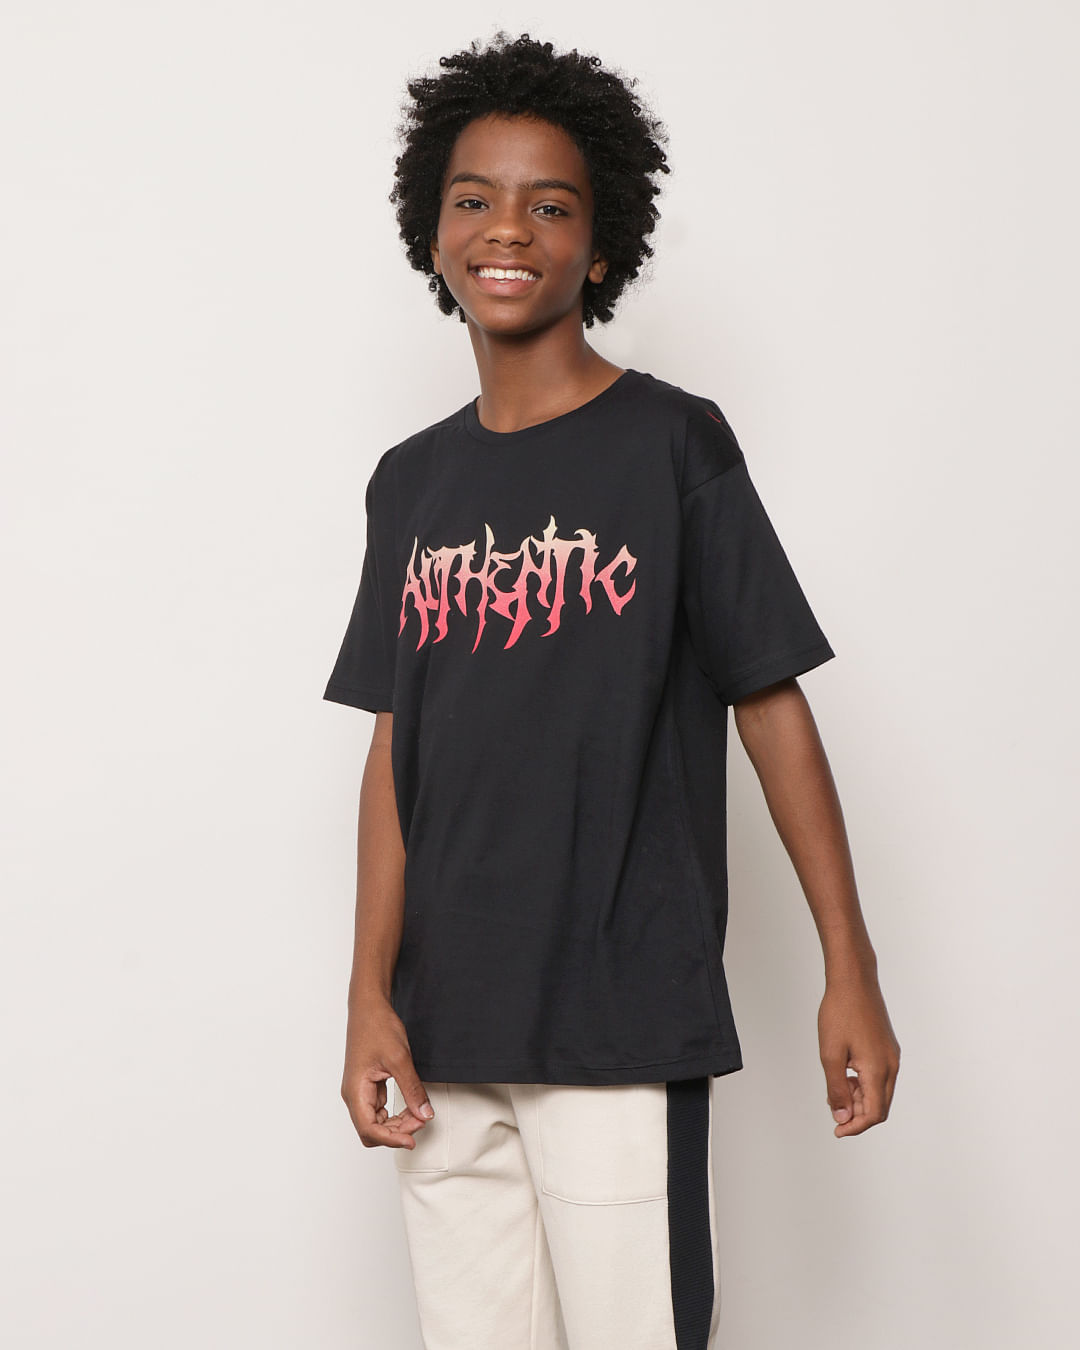 Camiseta-Juvenil-Manga-Curta-Estampa-Autentic-Preta